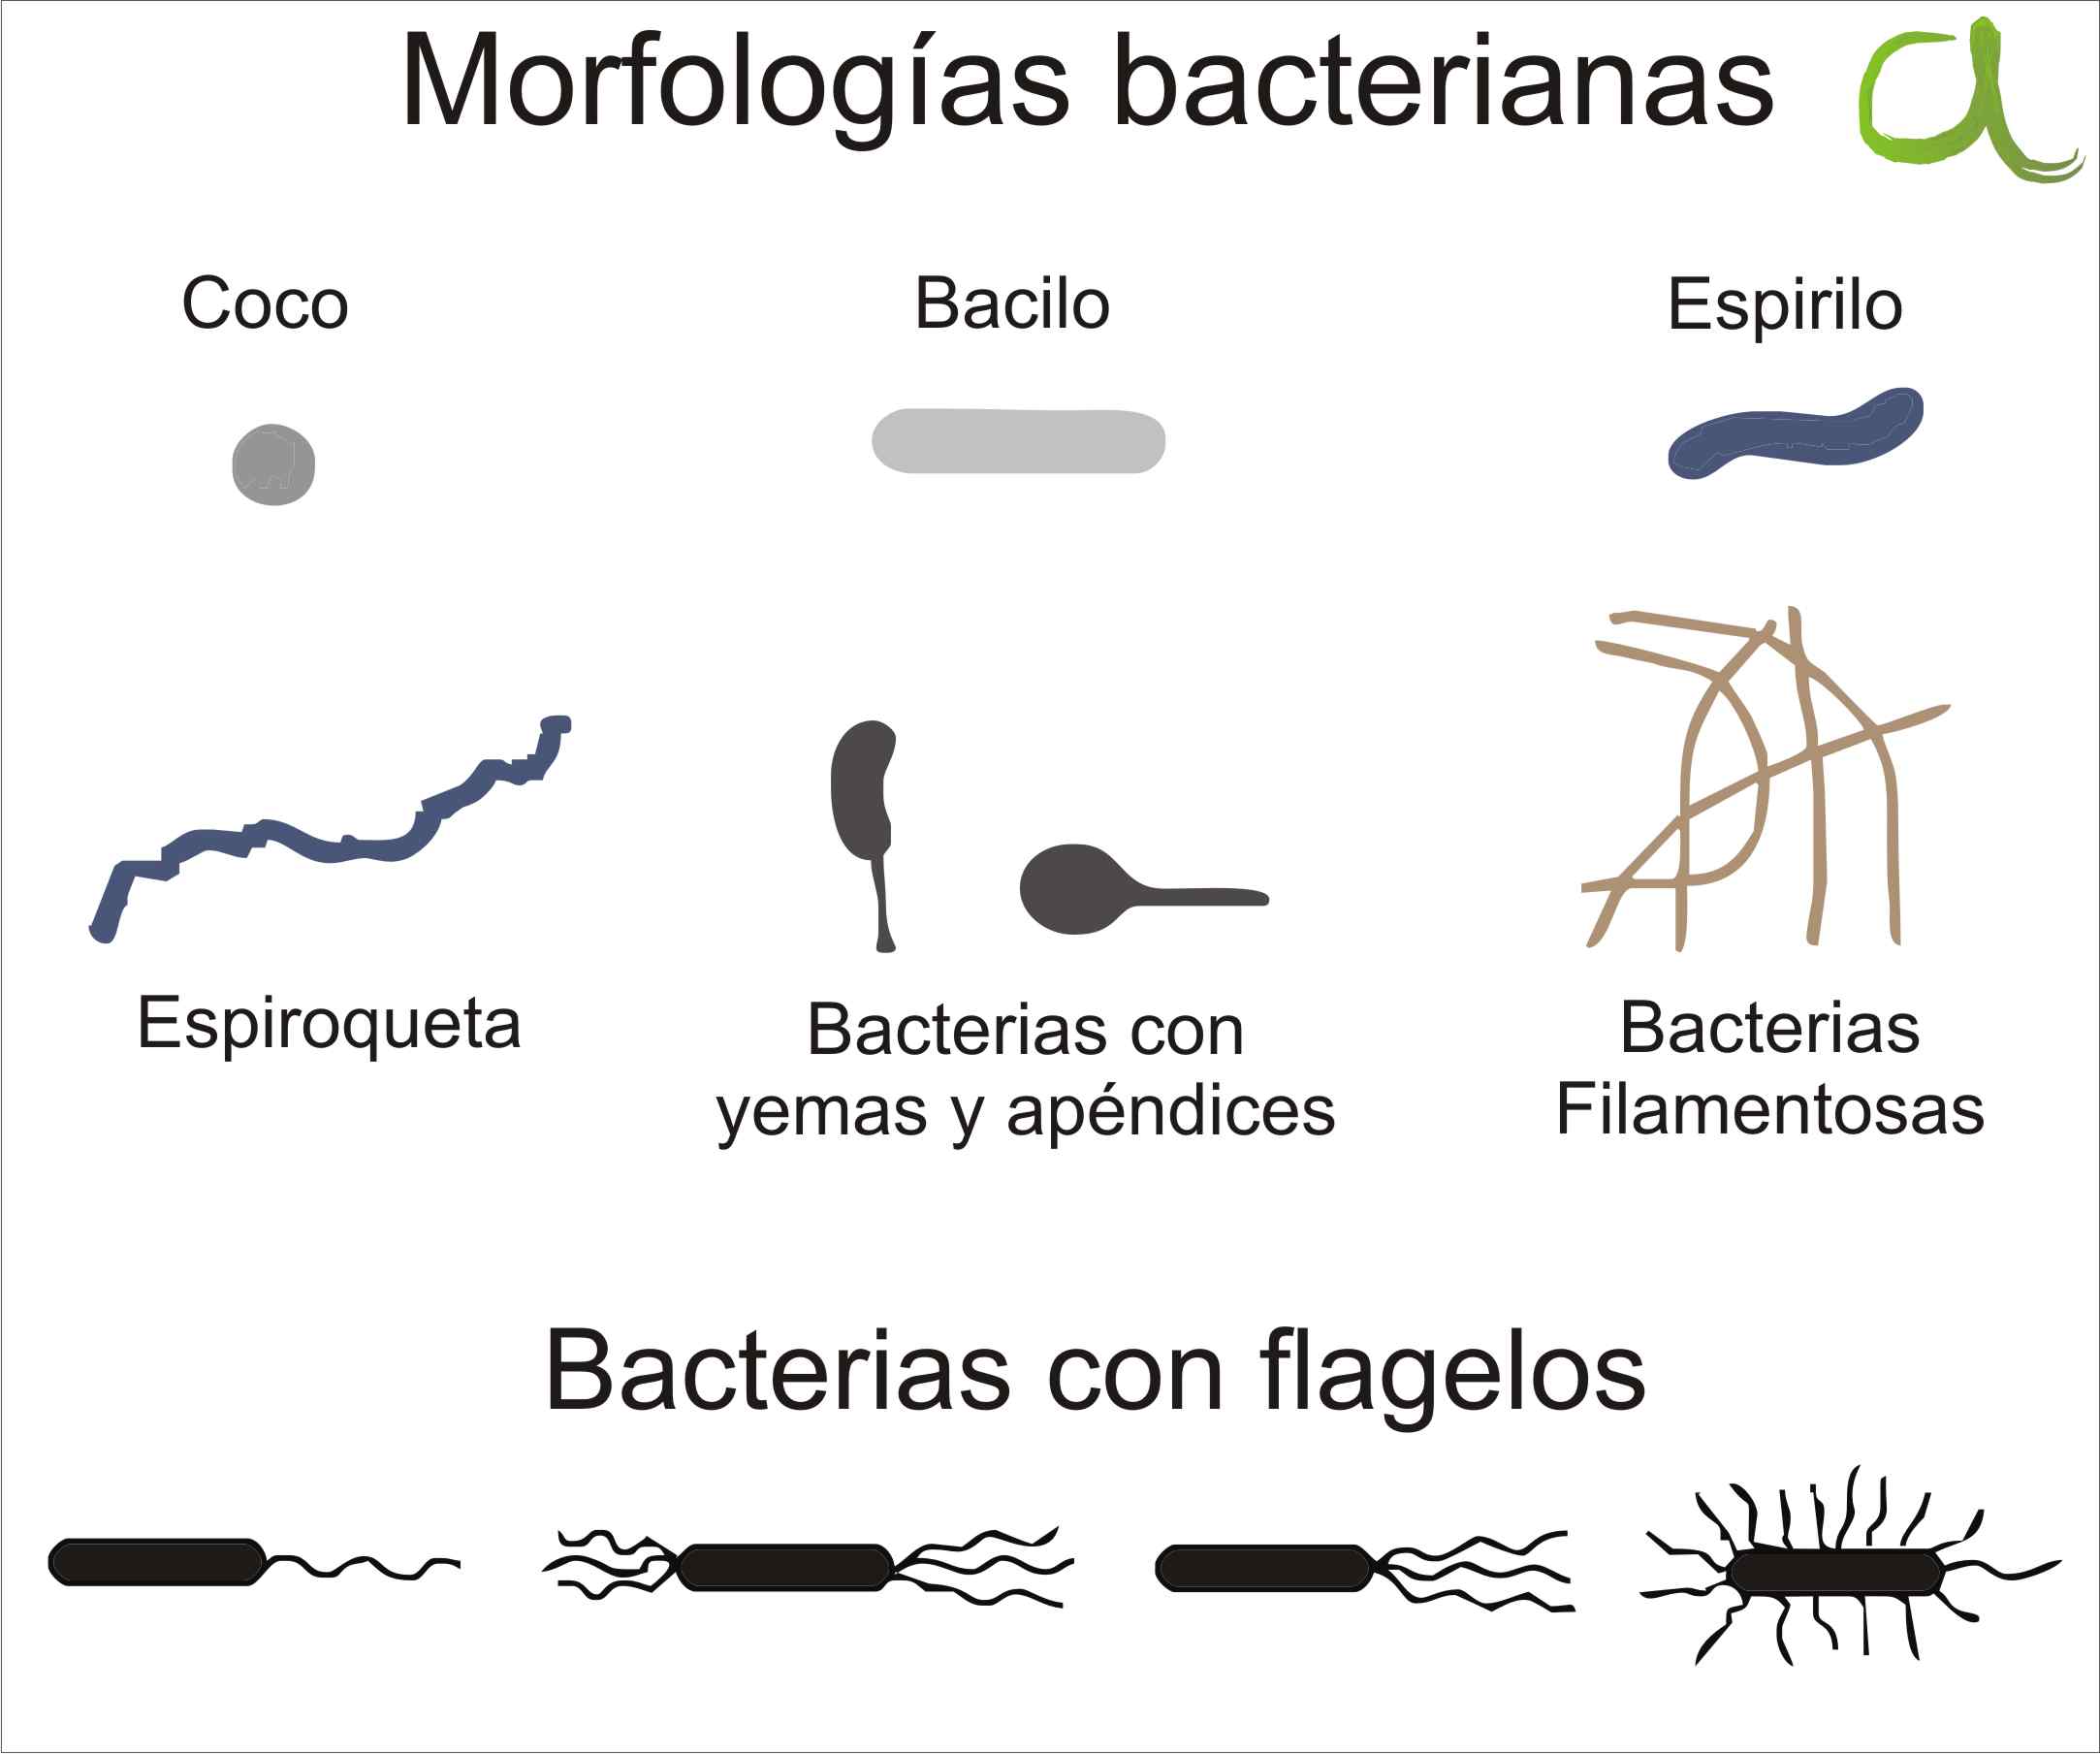 Morfologias bacterianas mas comunes